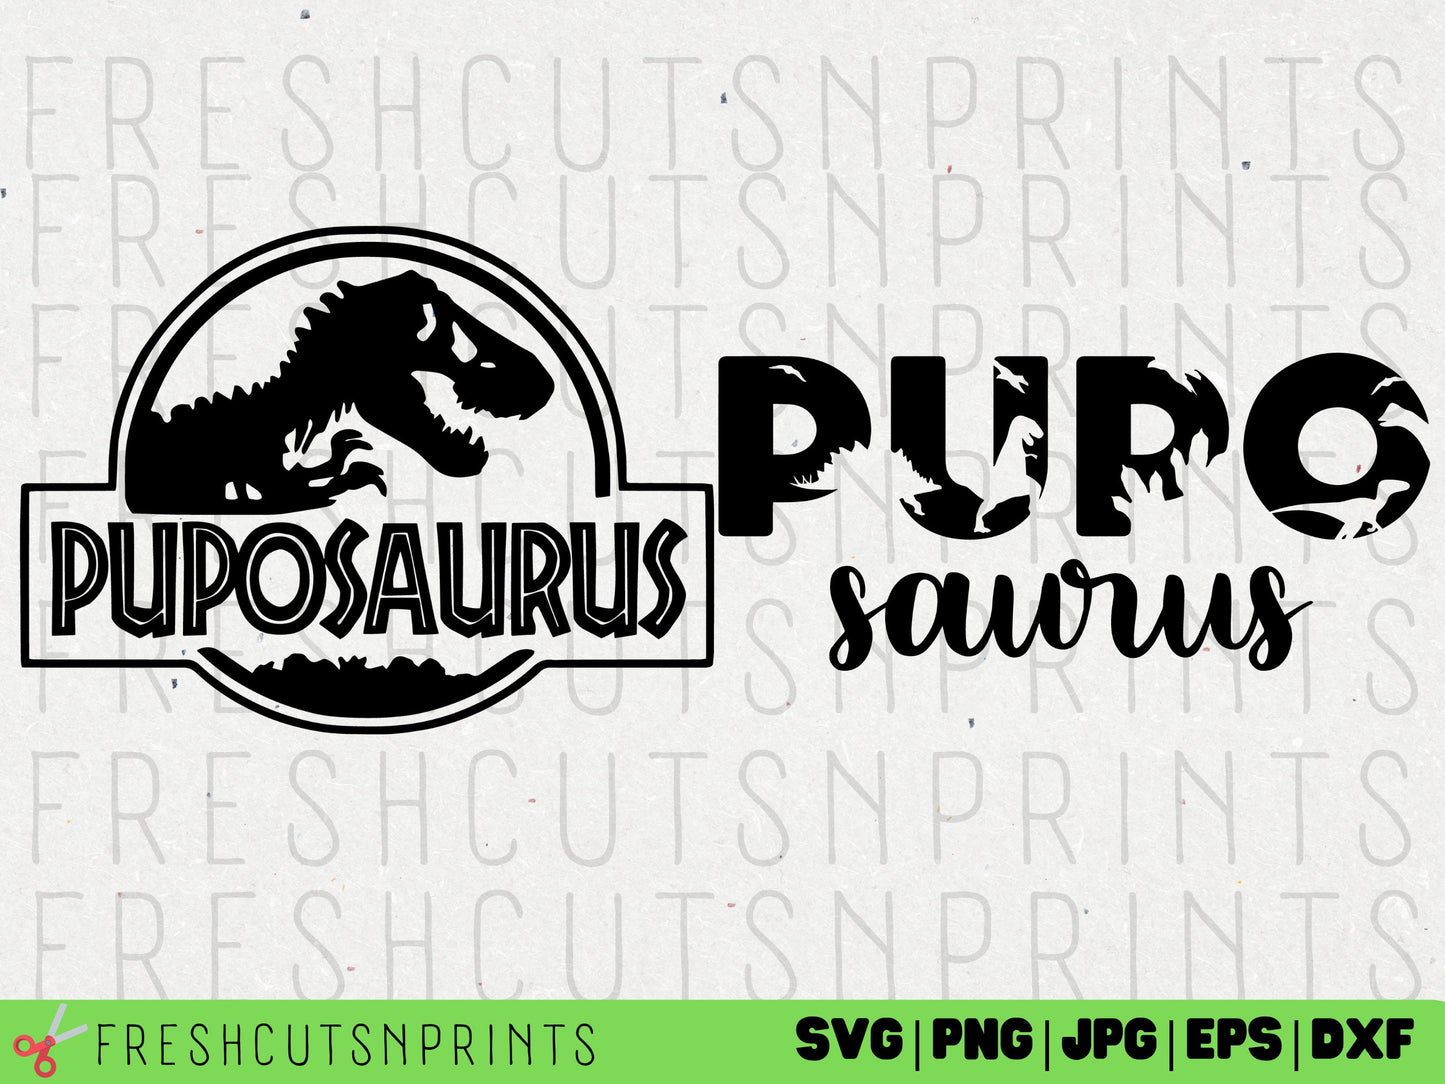 Puposaurus svg files, Puposaurus dxf, Puposaurus png, Dinosaur svg, Dinosaur vector, Jurassic svg, Dinosaur logo svg, Puposaurus designs